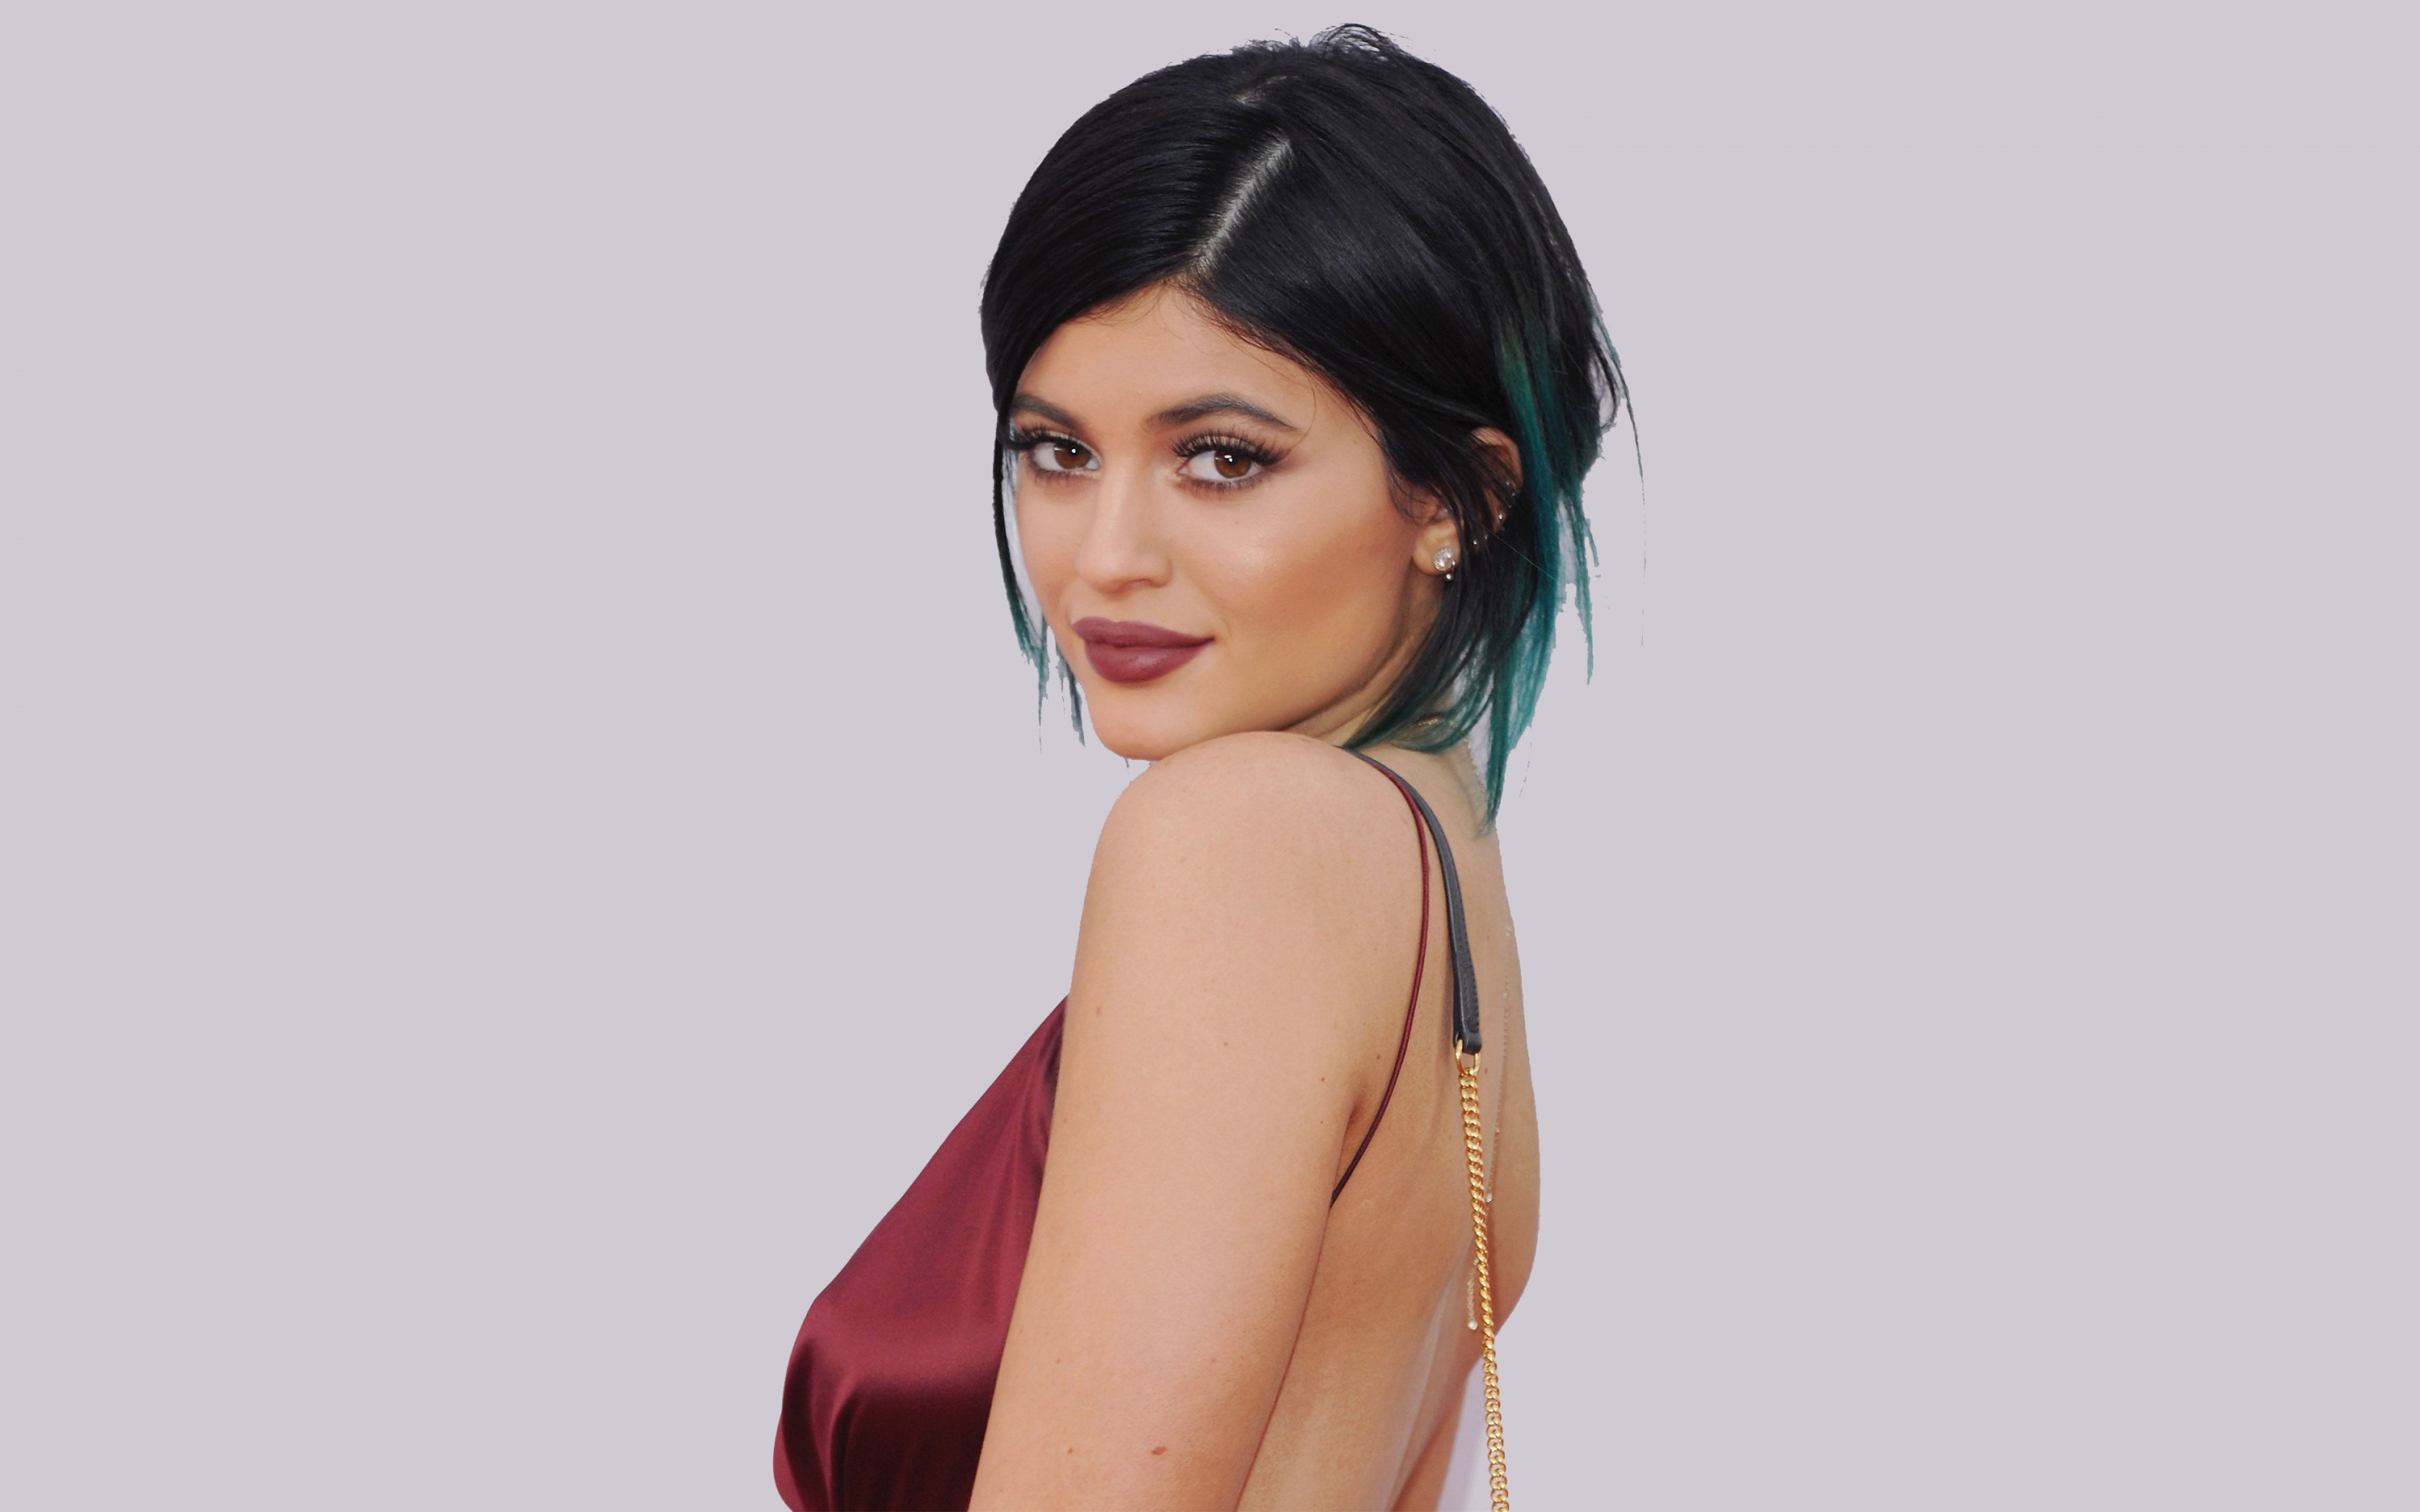 Kylie jenner, model, American beauty, 2018, 2880x1800 wallpaper